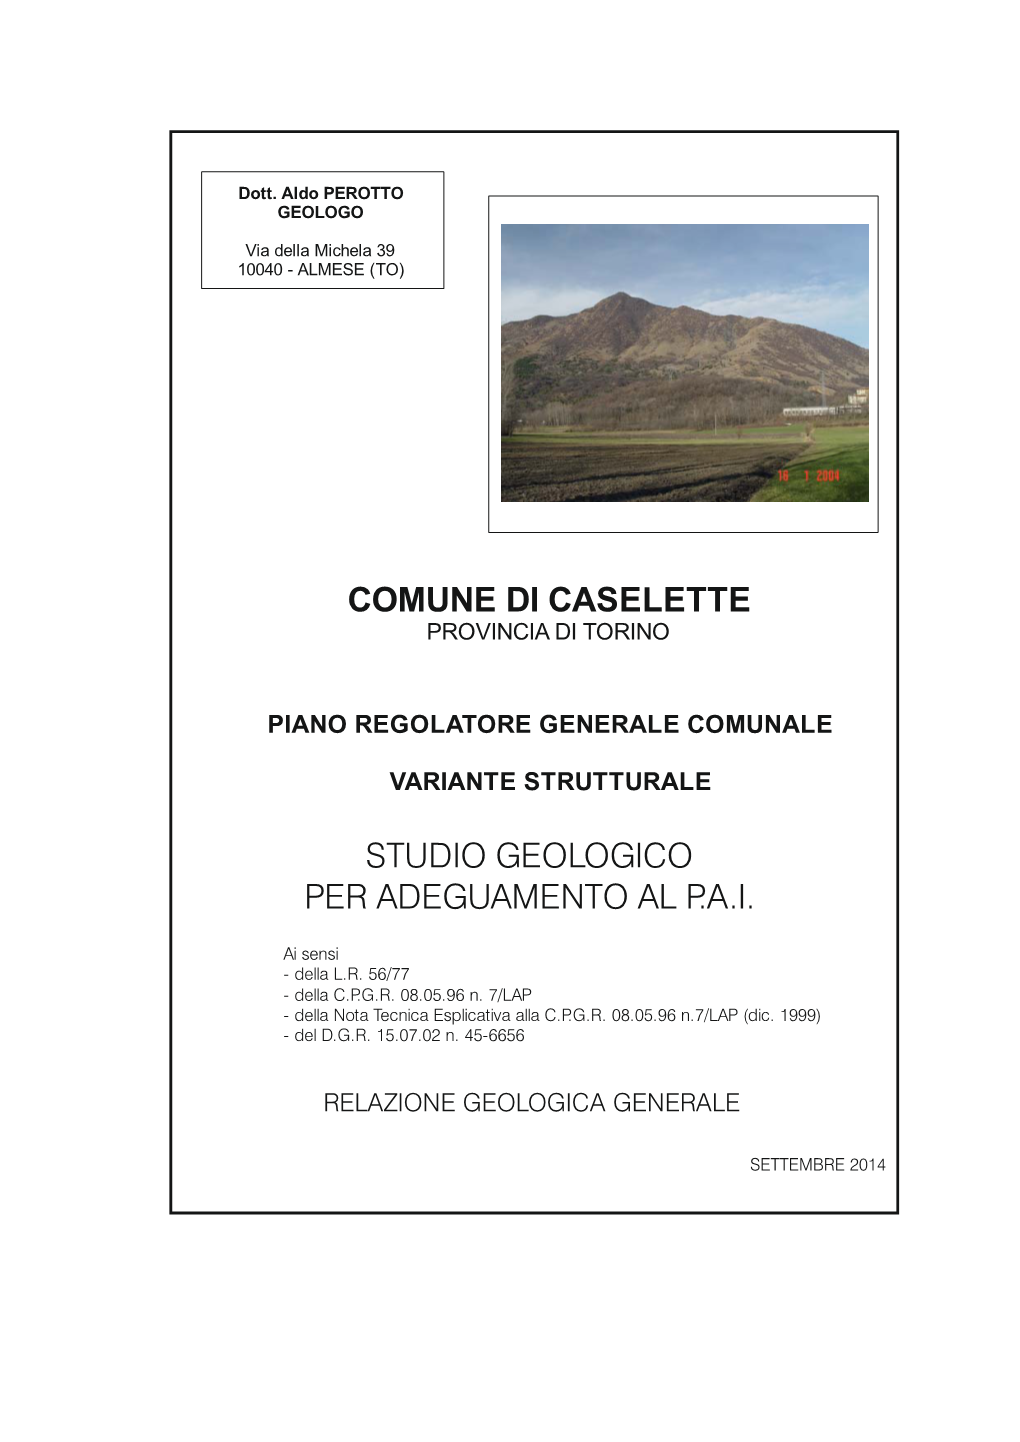 Comune Di Caselette Studio Geologico Per Adeguamento Al P.A.I